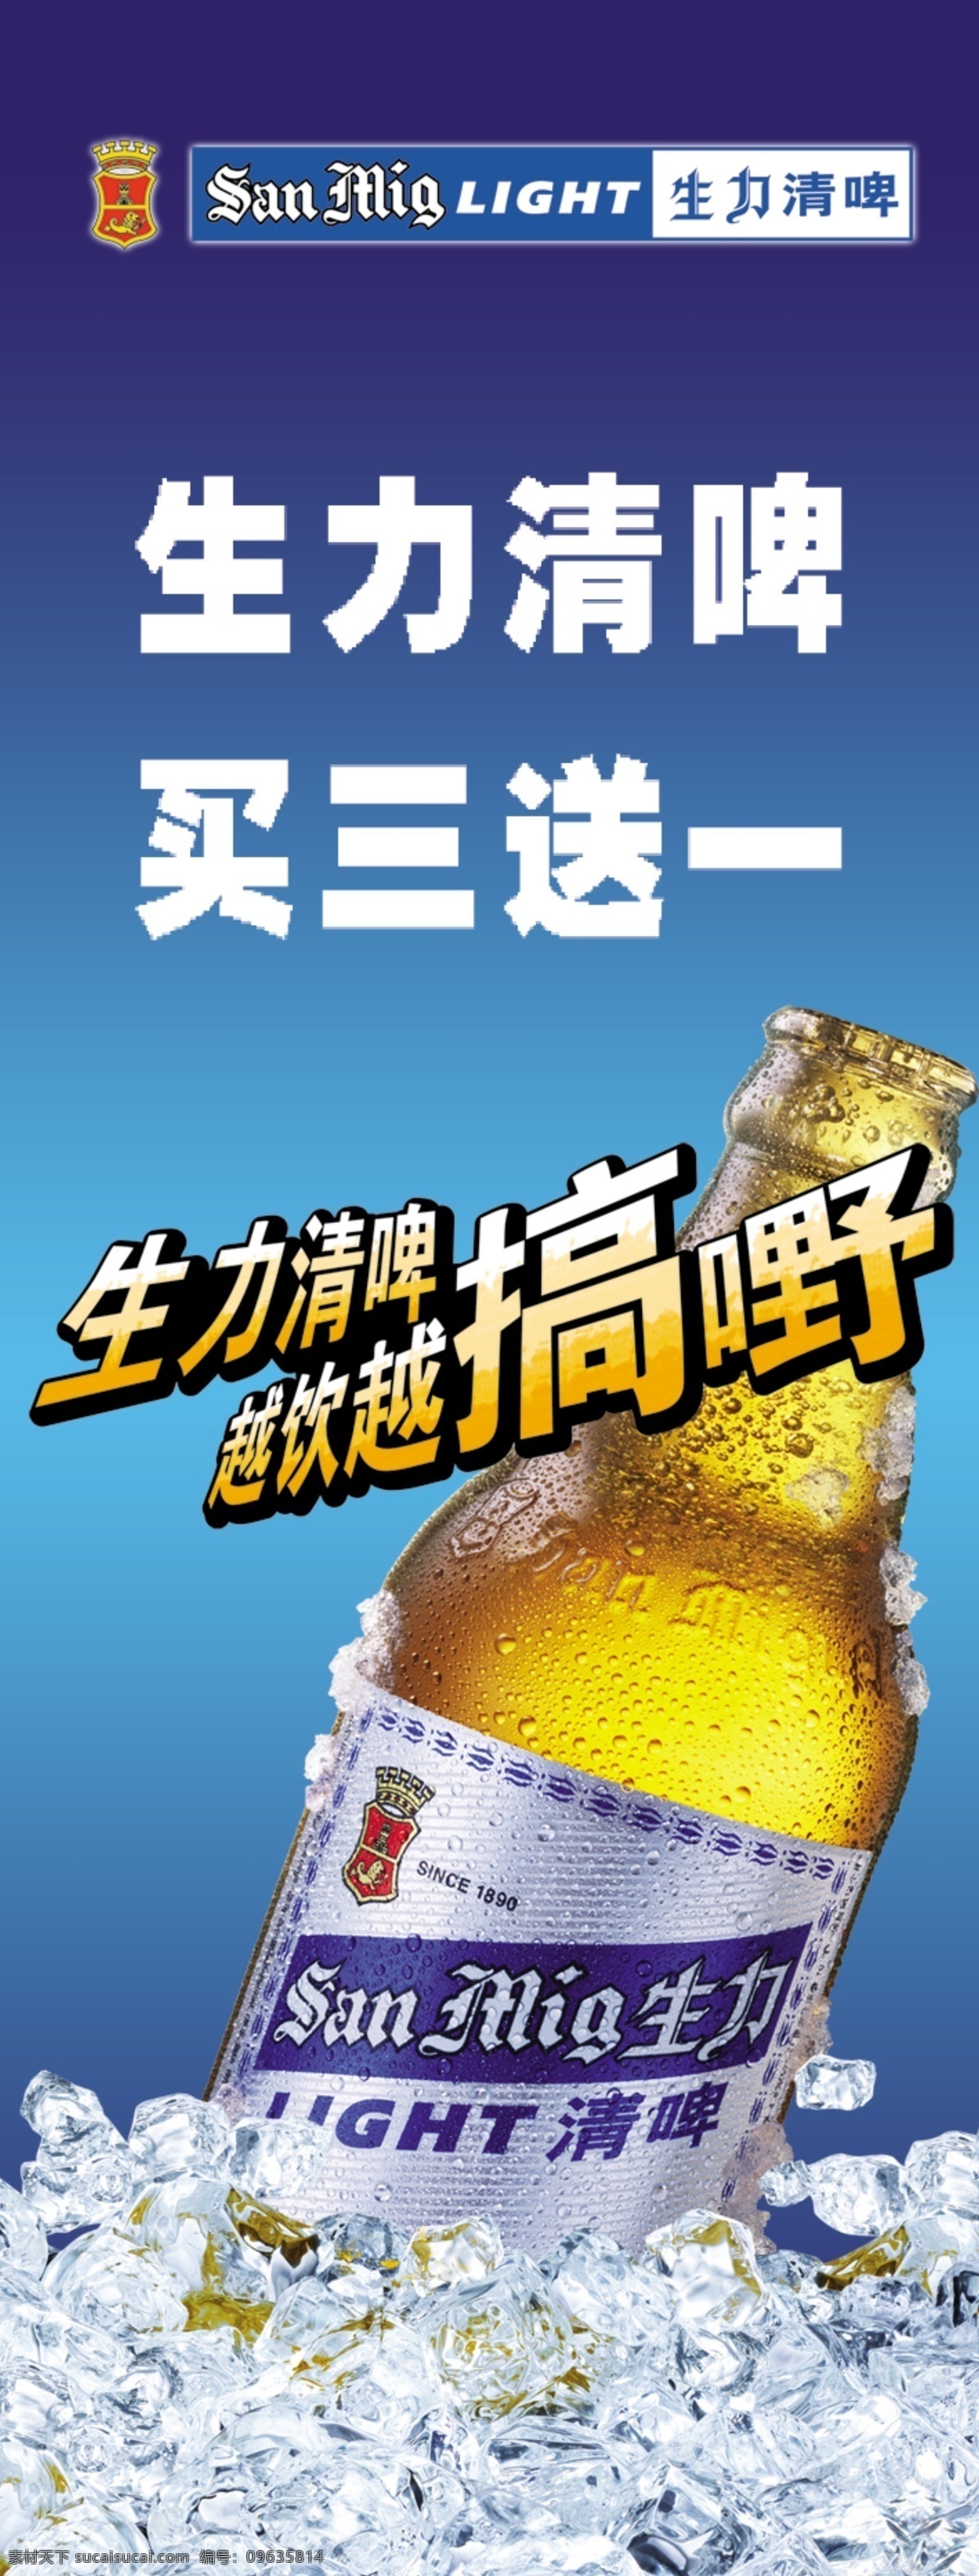 生力 啤酒 冰块 广告设计模板 国内广告设计 生力啤酒 源文件库 模板下载 矢量图 日常生活